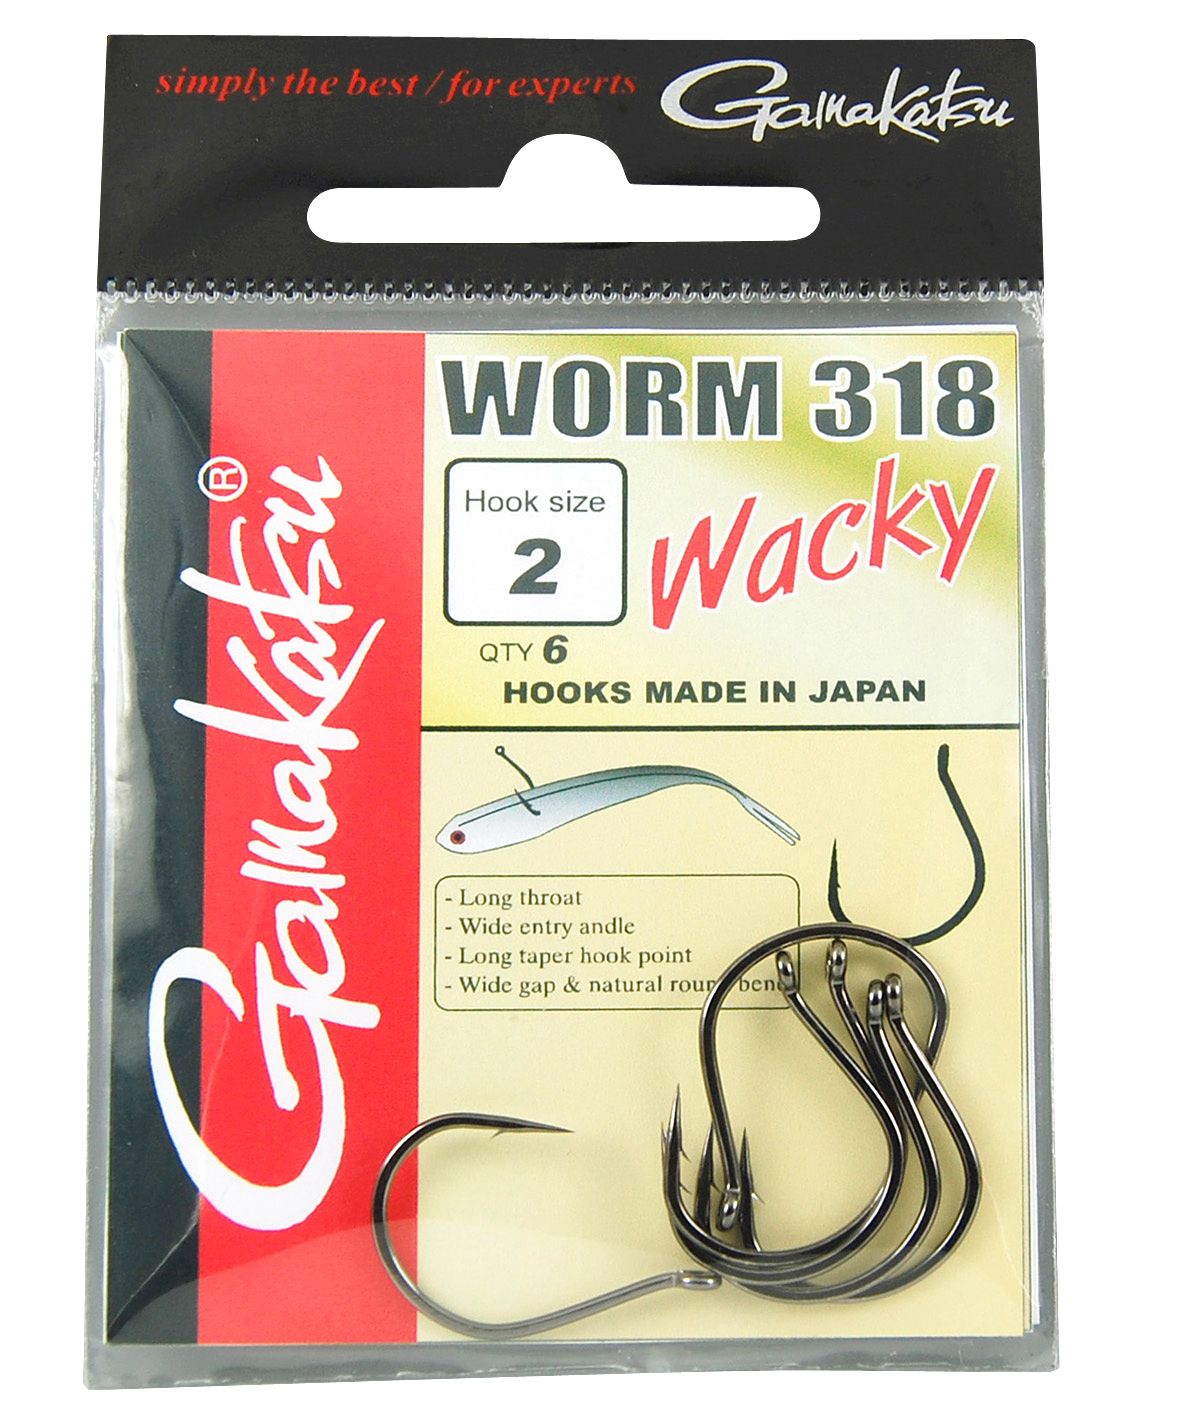 Worm 318 Wacky